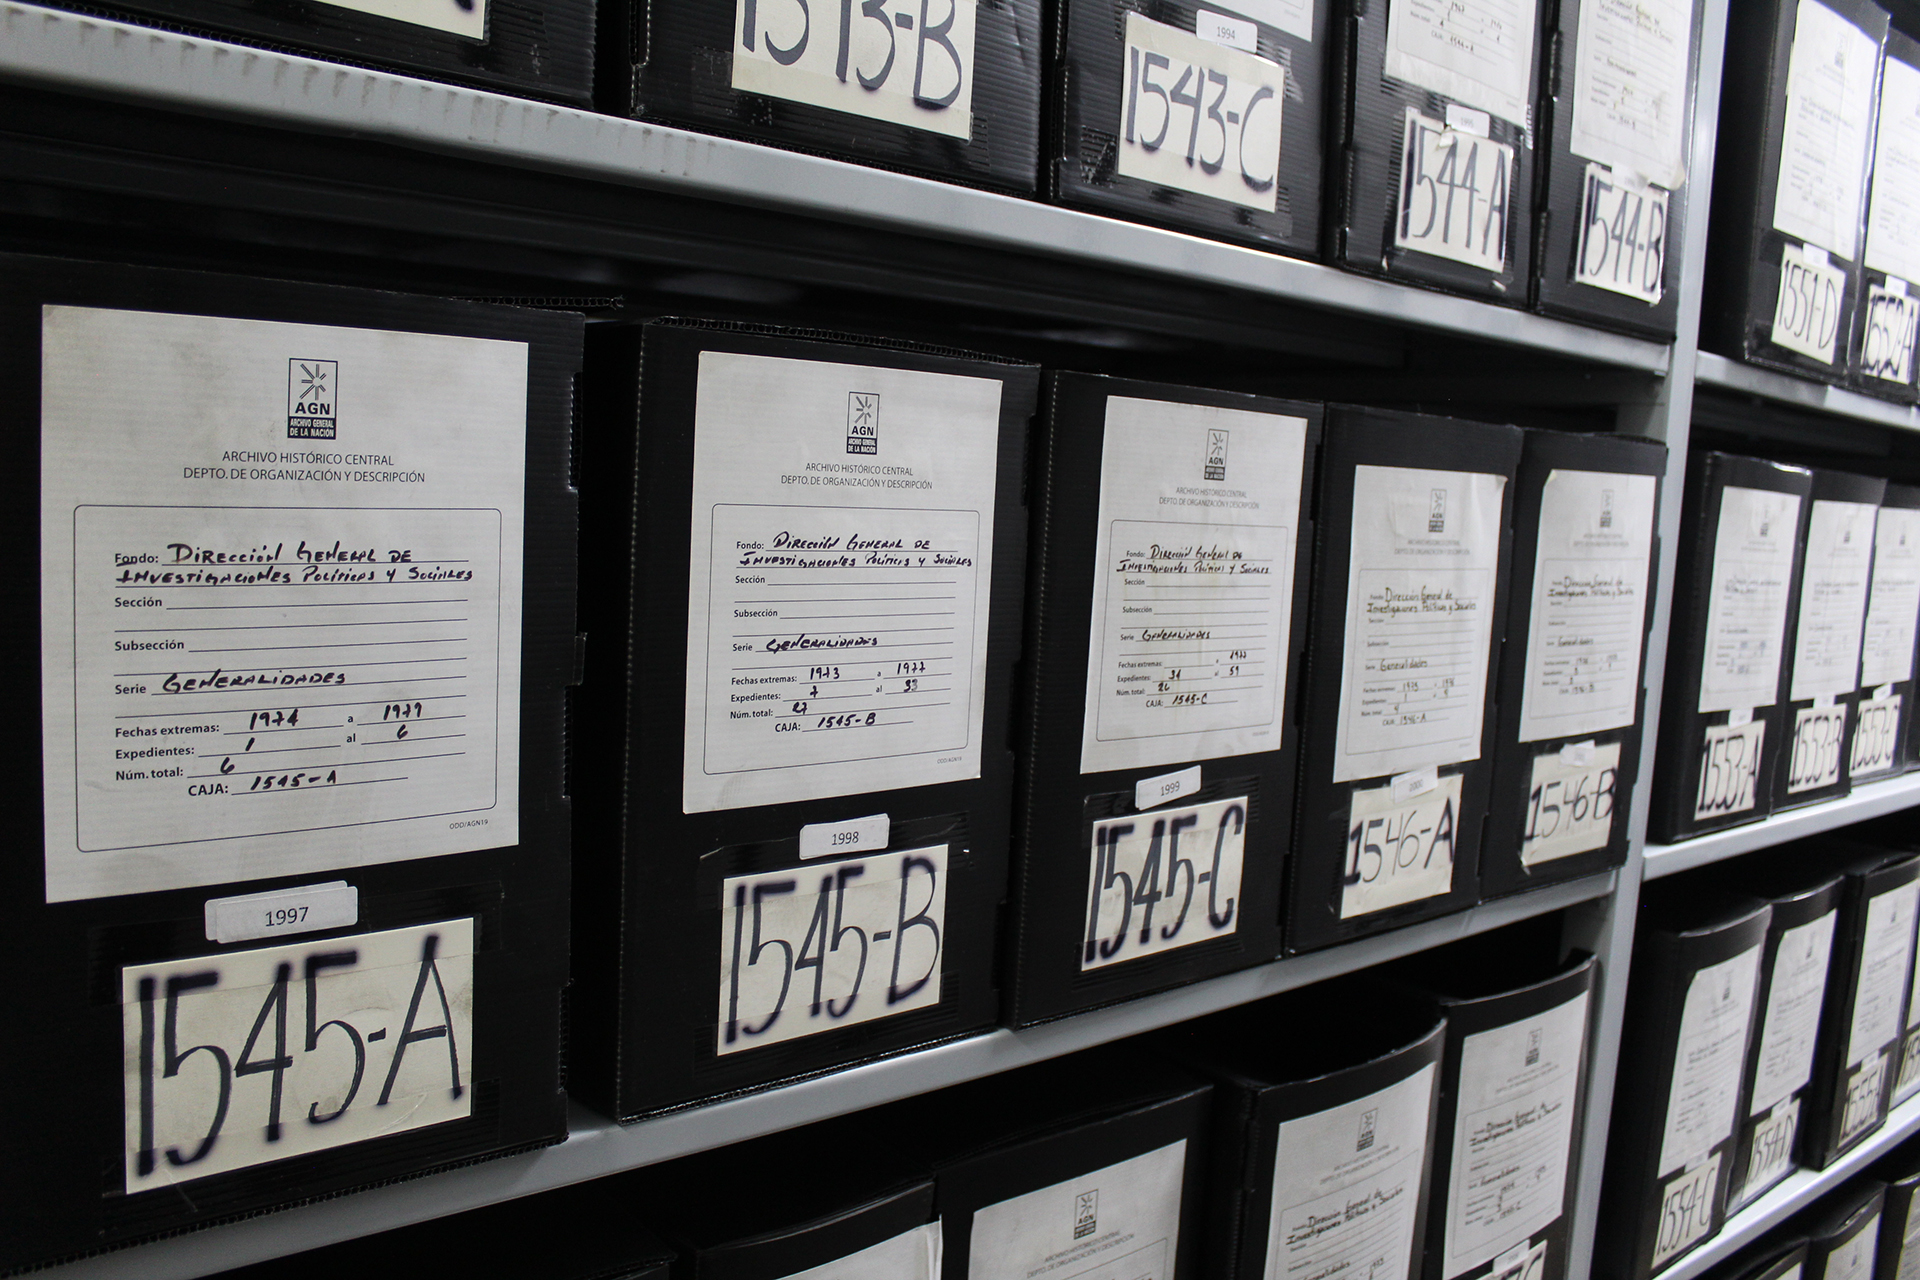 Imagen con cajas de polipropileno colocadas en estanterías, con números consecutivos y etiquetas que los identifican como fondos de la Dirección General de Investigaciones Políticas y Sociales